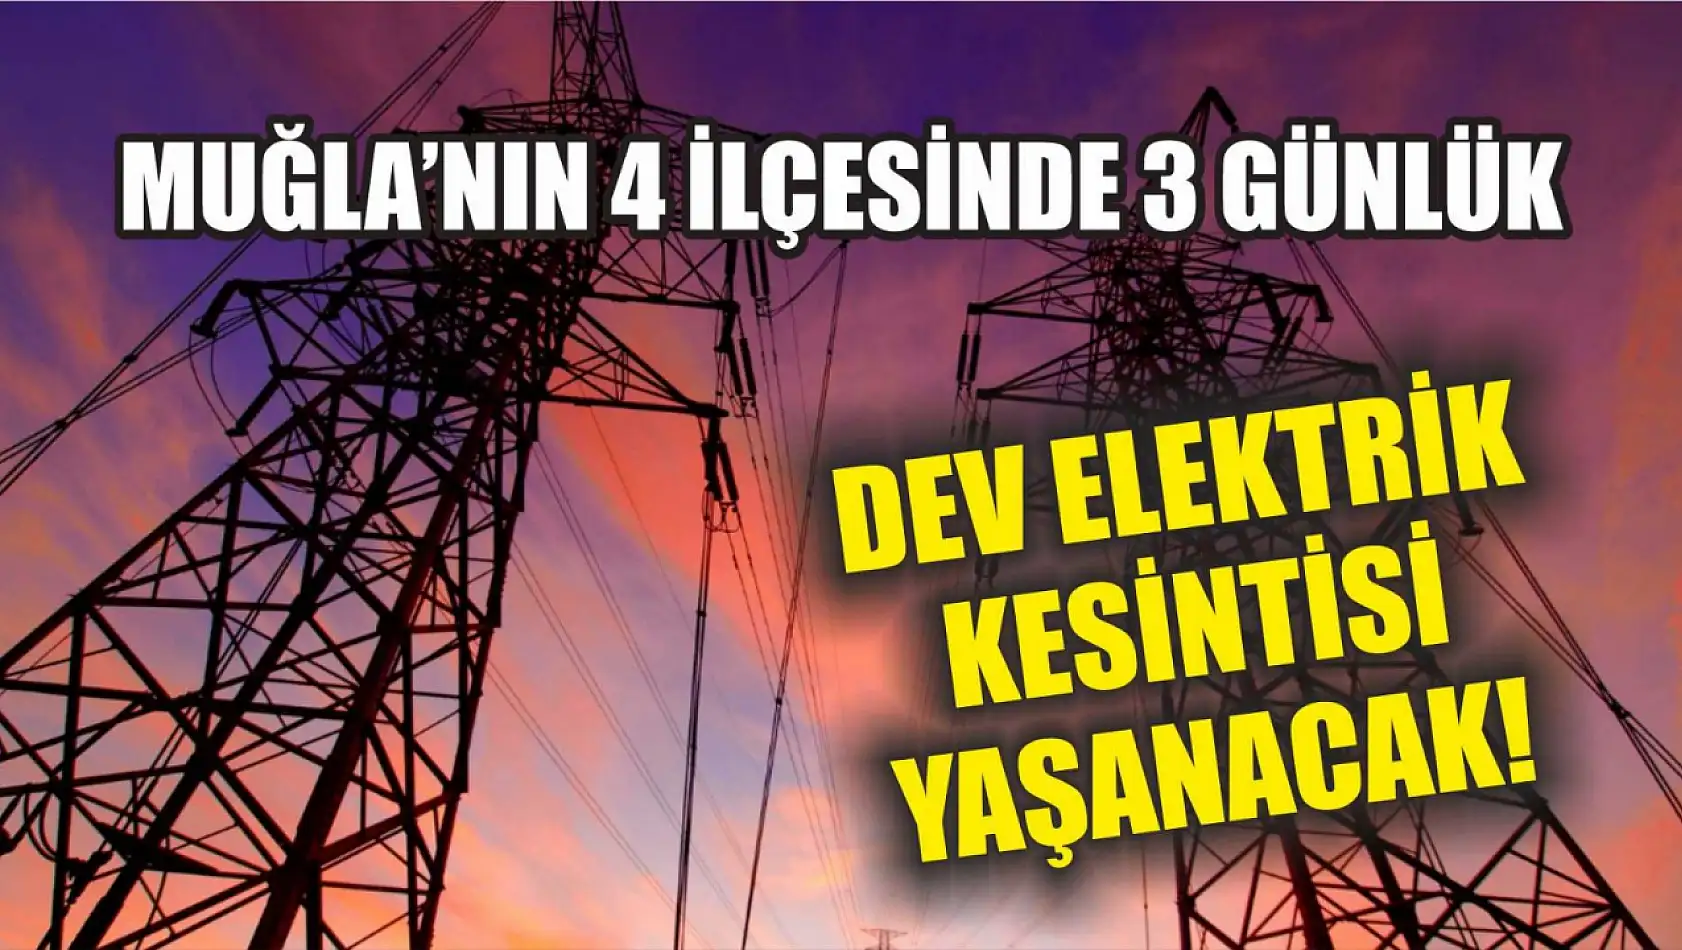 Muğla'nın 4 ilçesinde 3 günlük dev elektrik kesintisi yaşanacak! 23-24-25 Temmuz elektrik kesintisi detaylar..